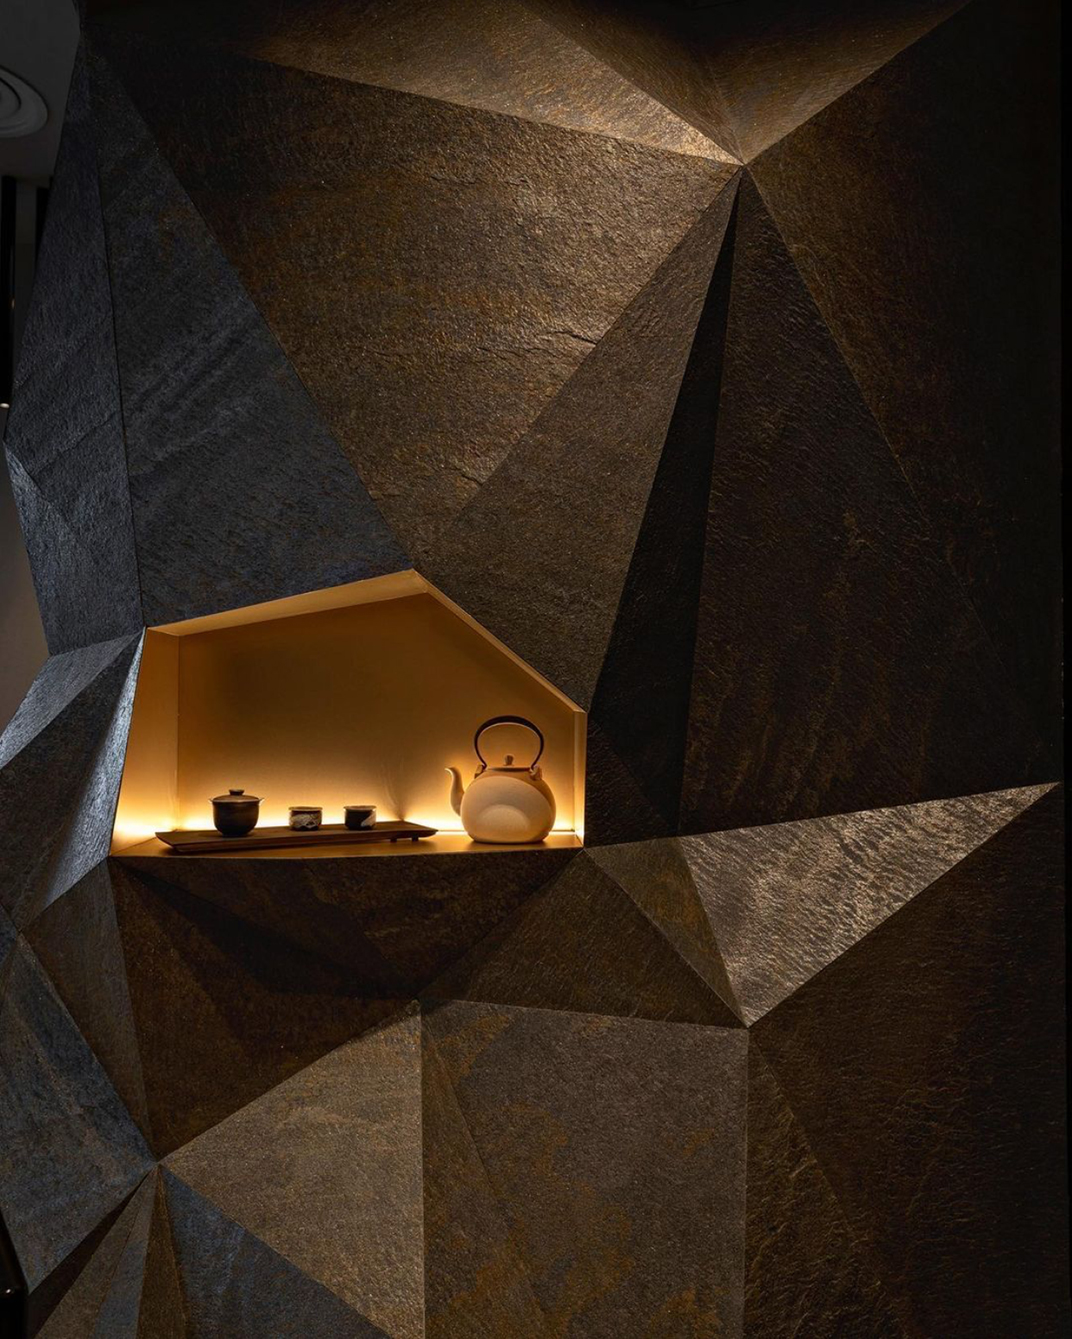 黑色调酒吧空间Yugen Tea Bar 澳大利亚 墨尔本 酒吧 黑色 三角形 水磨石 logo设计 vi设计 空间设计